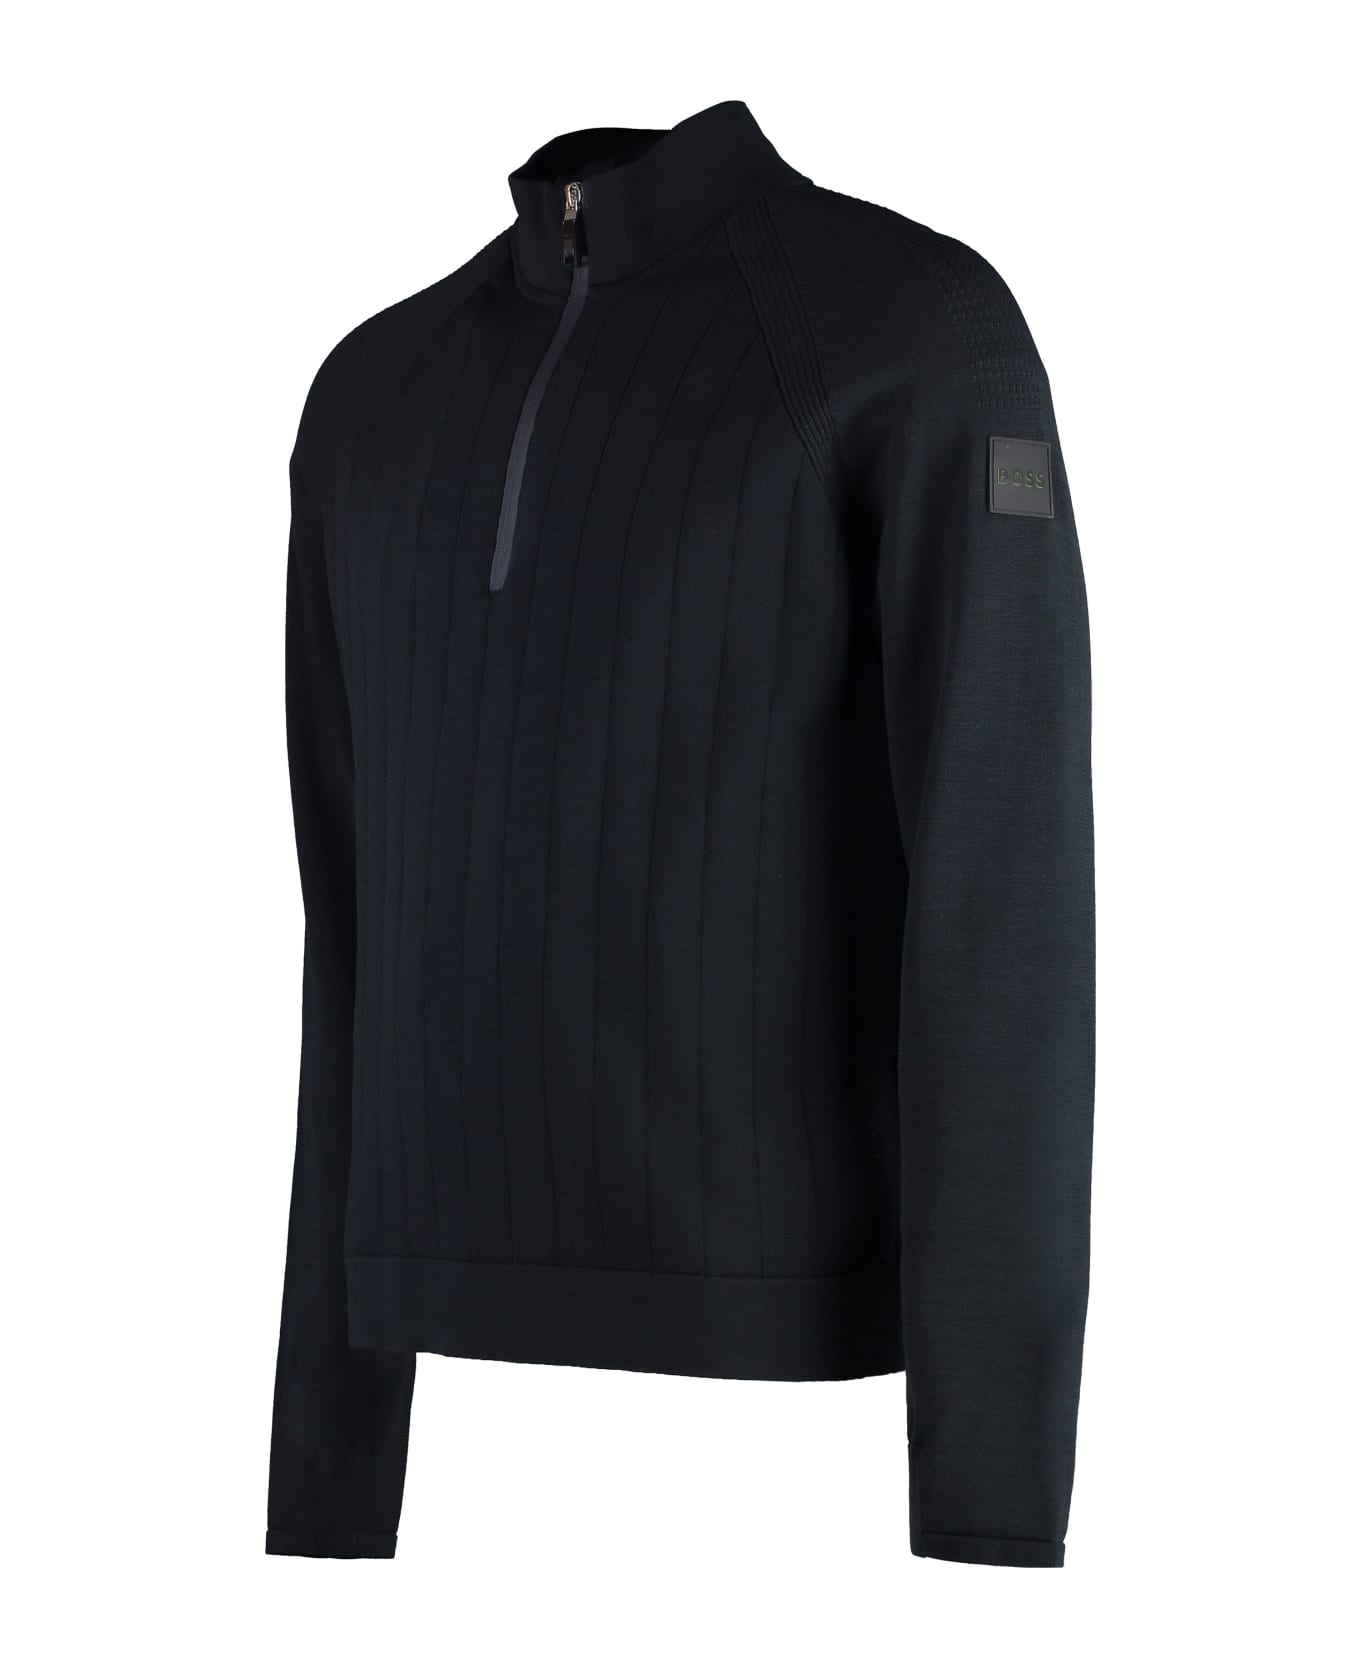 Hugo Boss Cotton Blend Turtleneck Sweater - blue ニットウェア